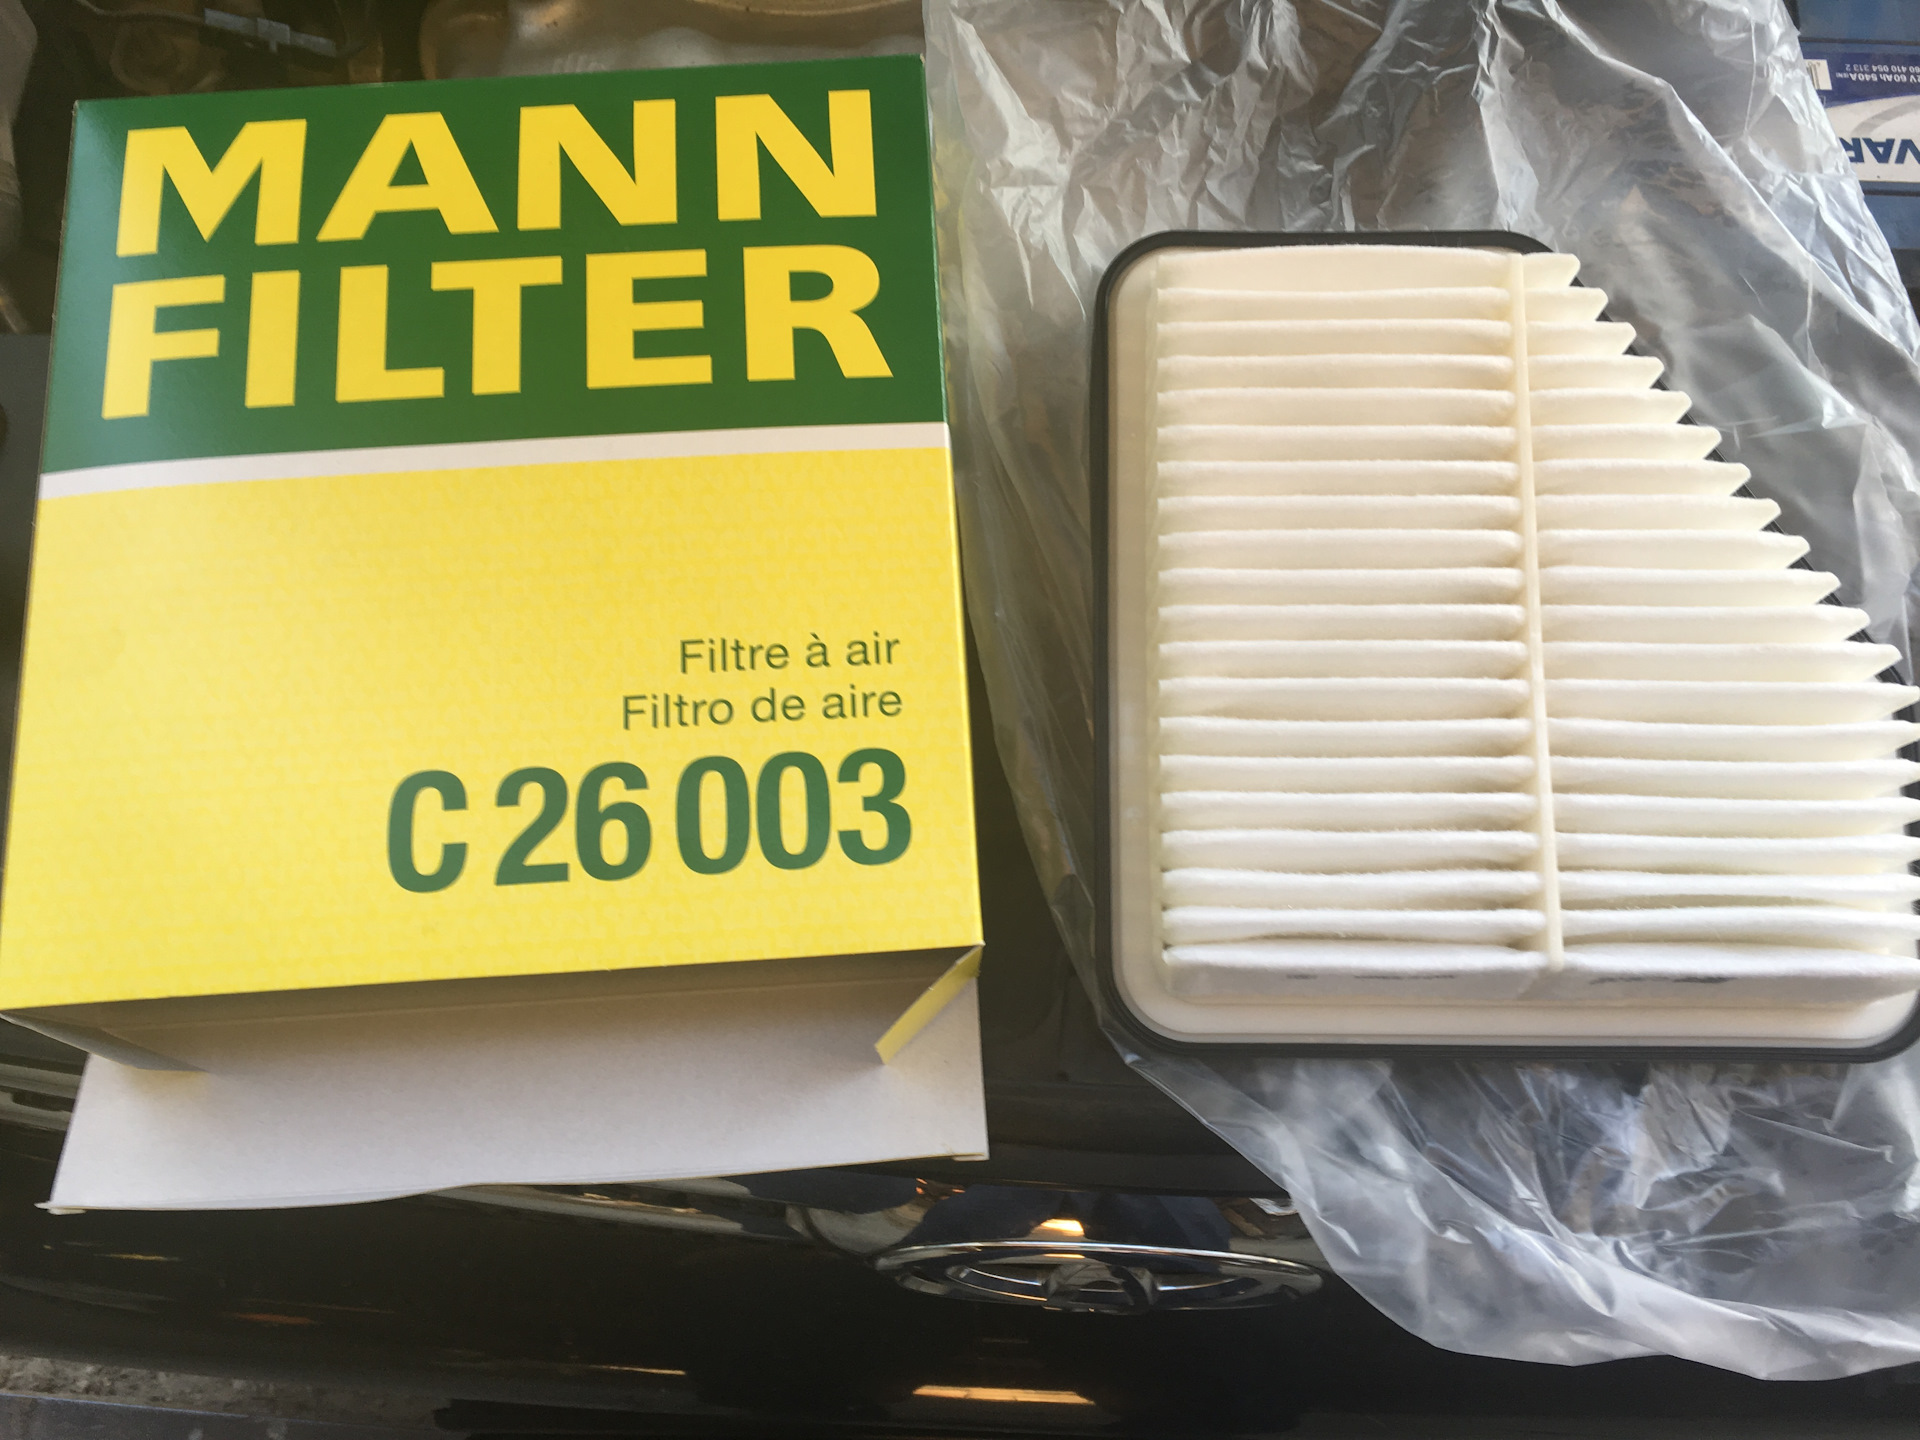 Фильтр воздушный портер. Mann Filter упаковка. Фильтр воздушный Champion 1400012. 5535005000 Фильтр воздушный. Фильтр воздушный 1000975877.